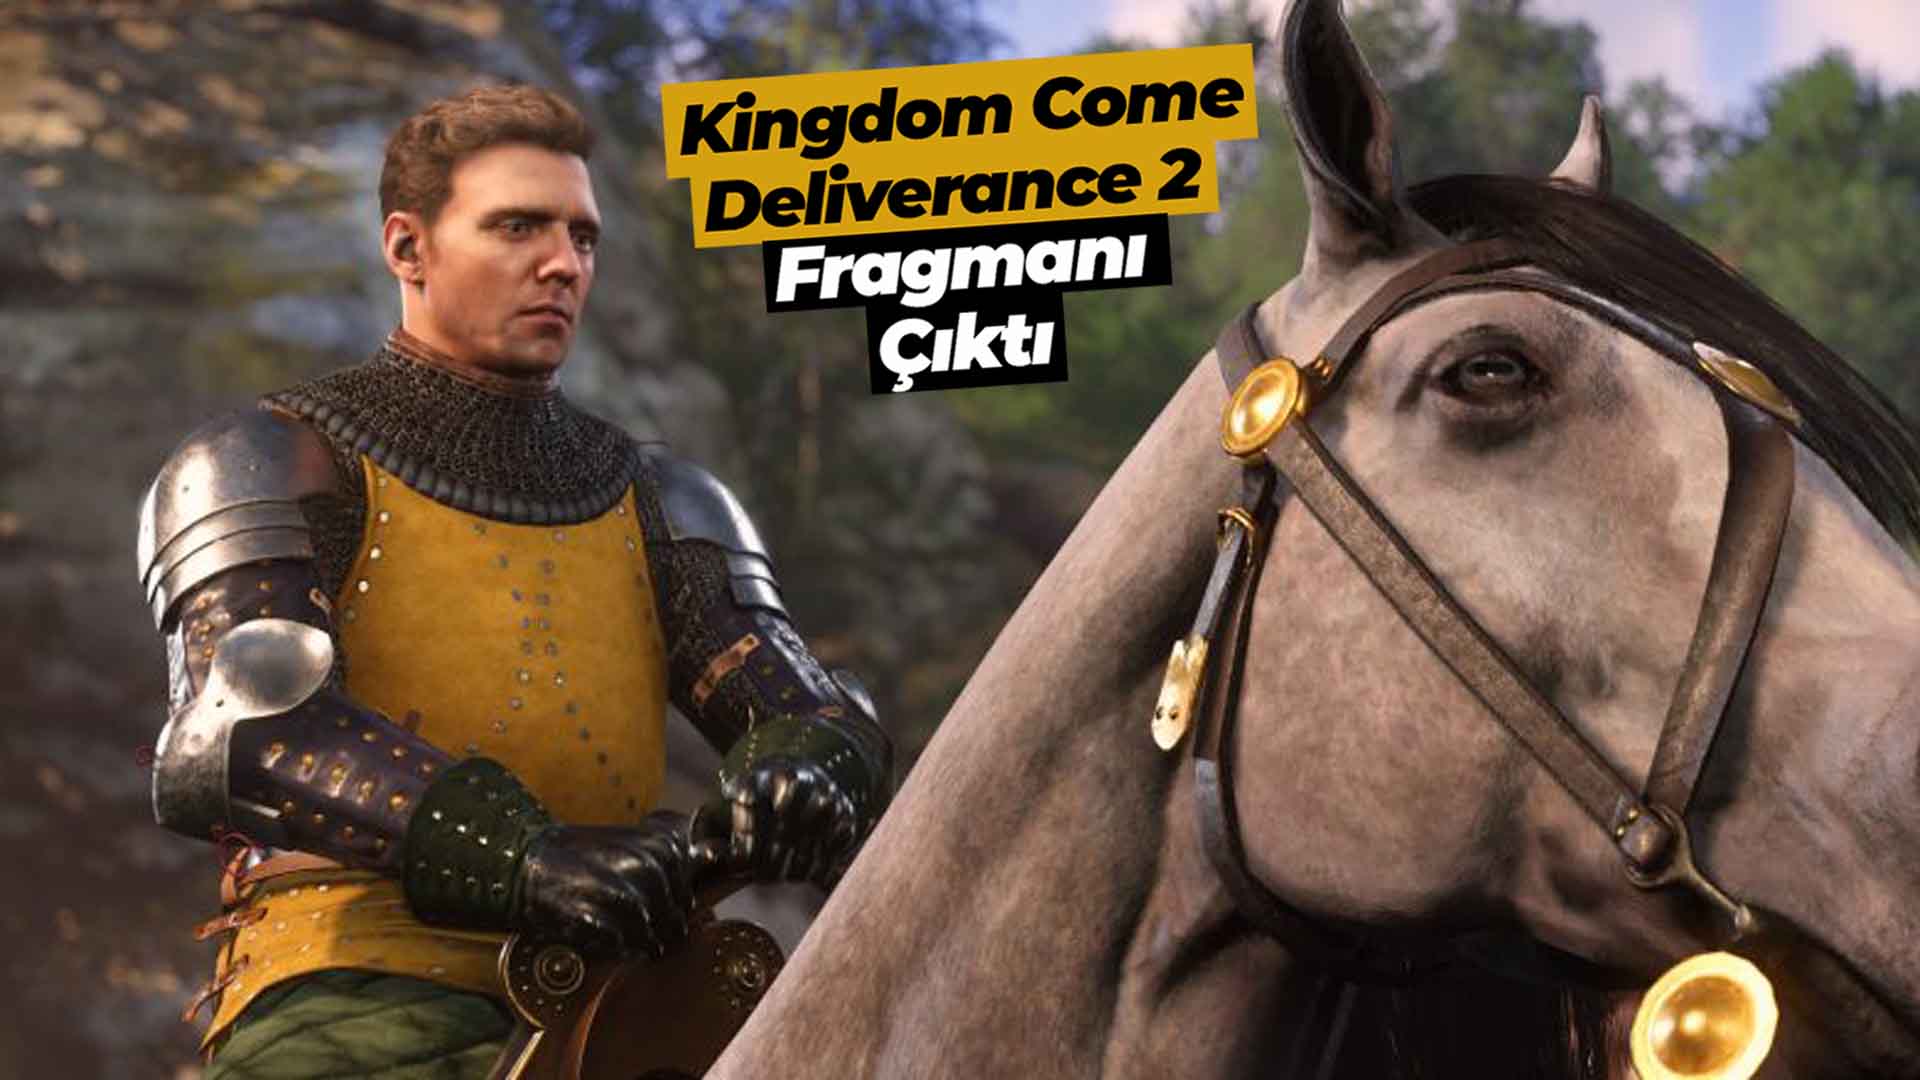 Kingdom Come: Deliverance 2 fragmanı çıktı! En iyi orta çağ RPG oyunlarından birisi olan yapım bu yıl içerisinde çıkış yapacak.